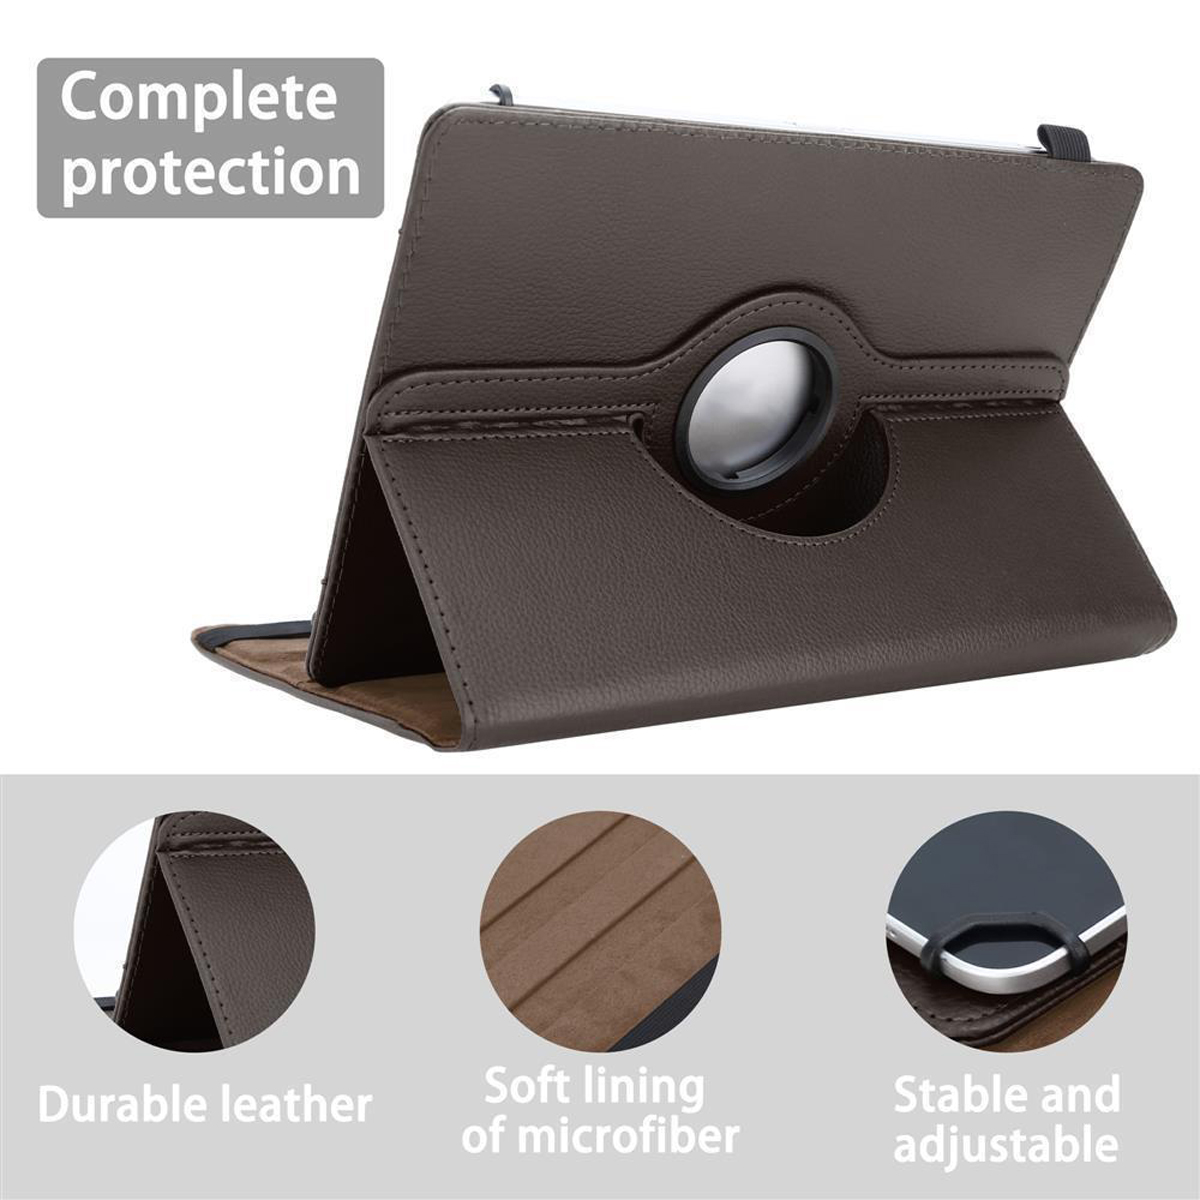 CADORABO Tablet Hülle 360 Grad Sony BRAUN Backcover für Tablethülle Kunstleder, Schutz